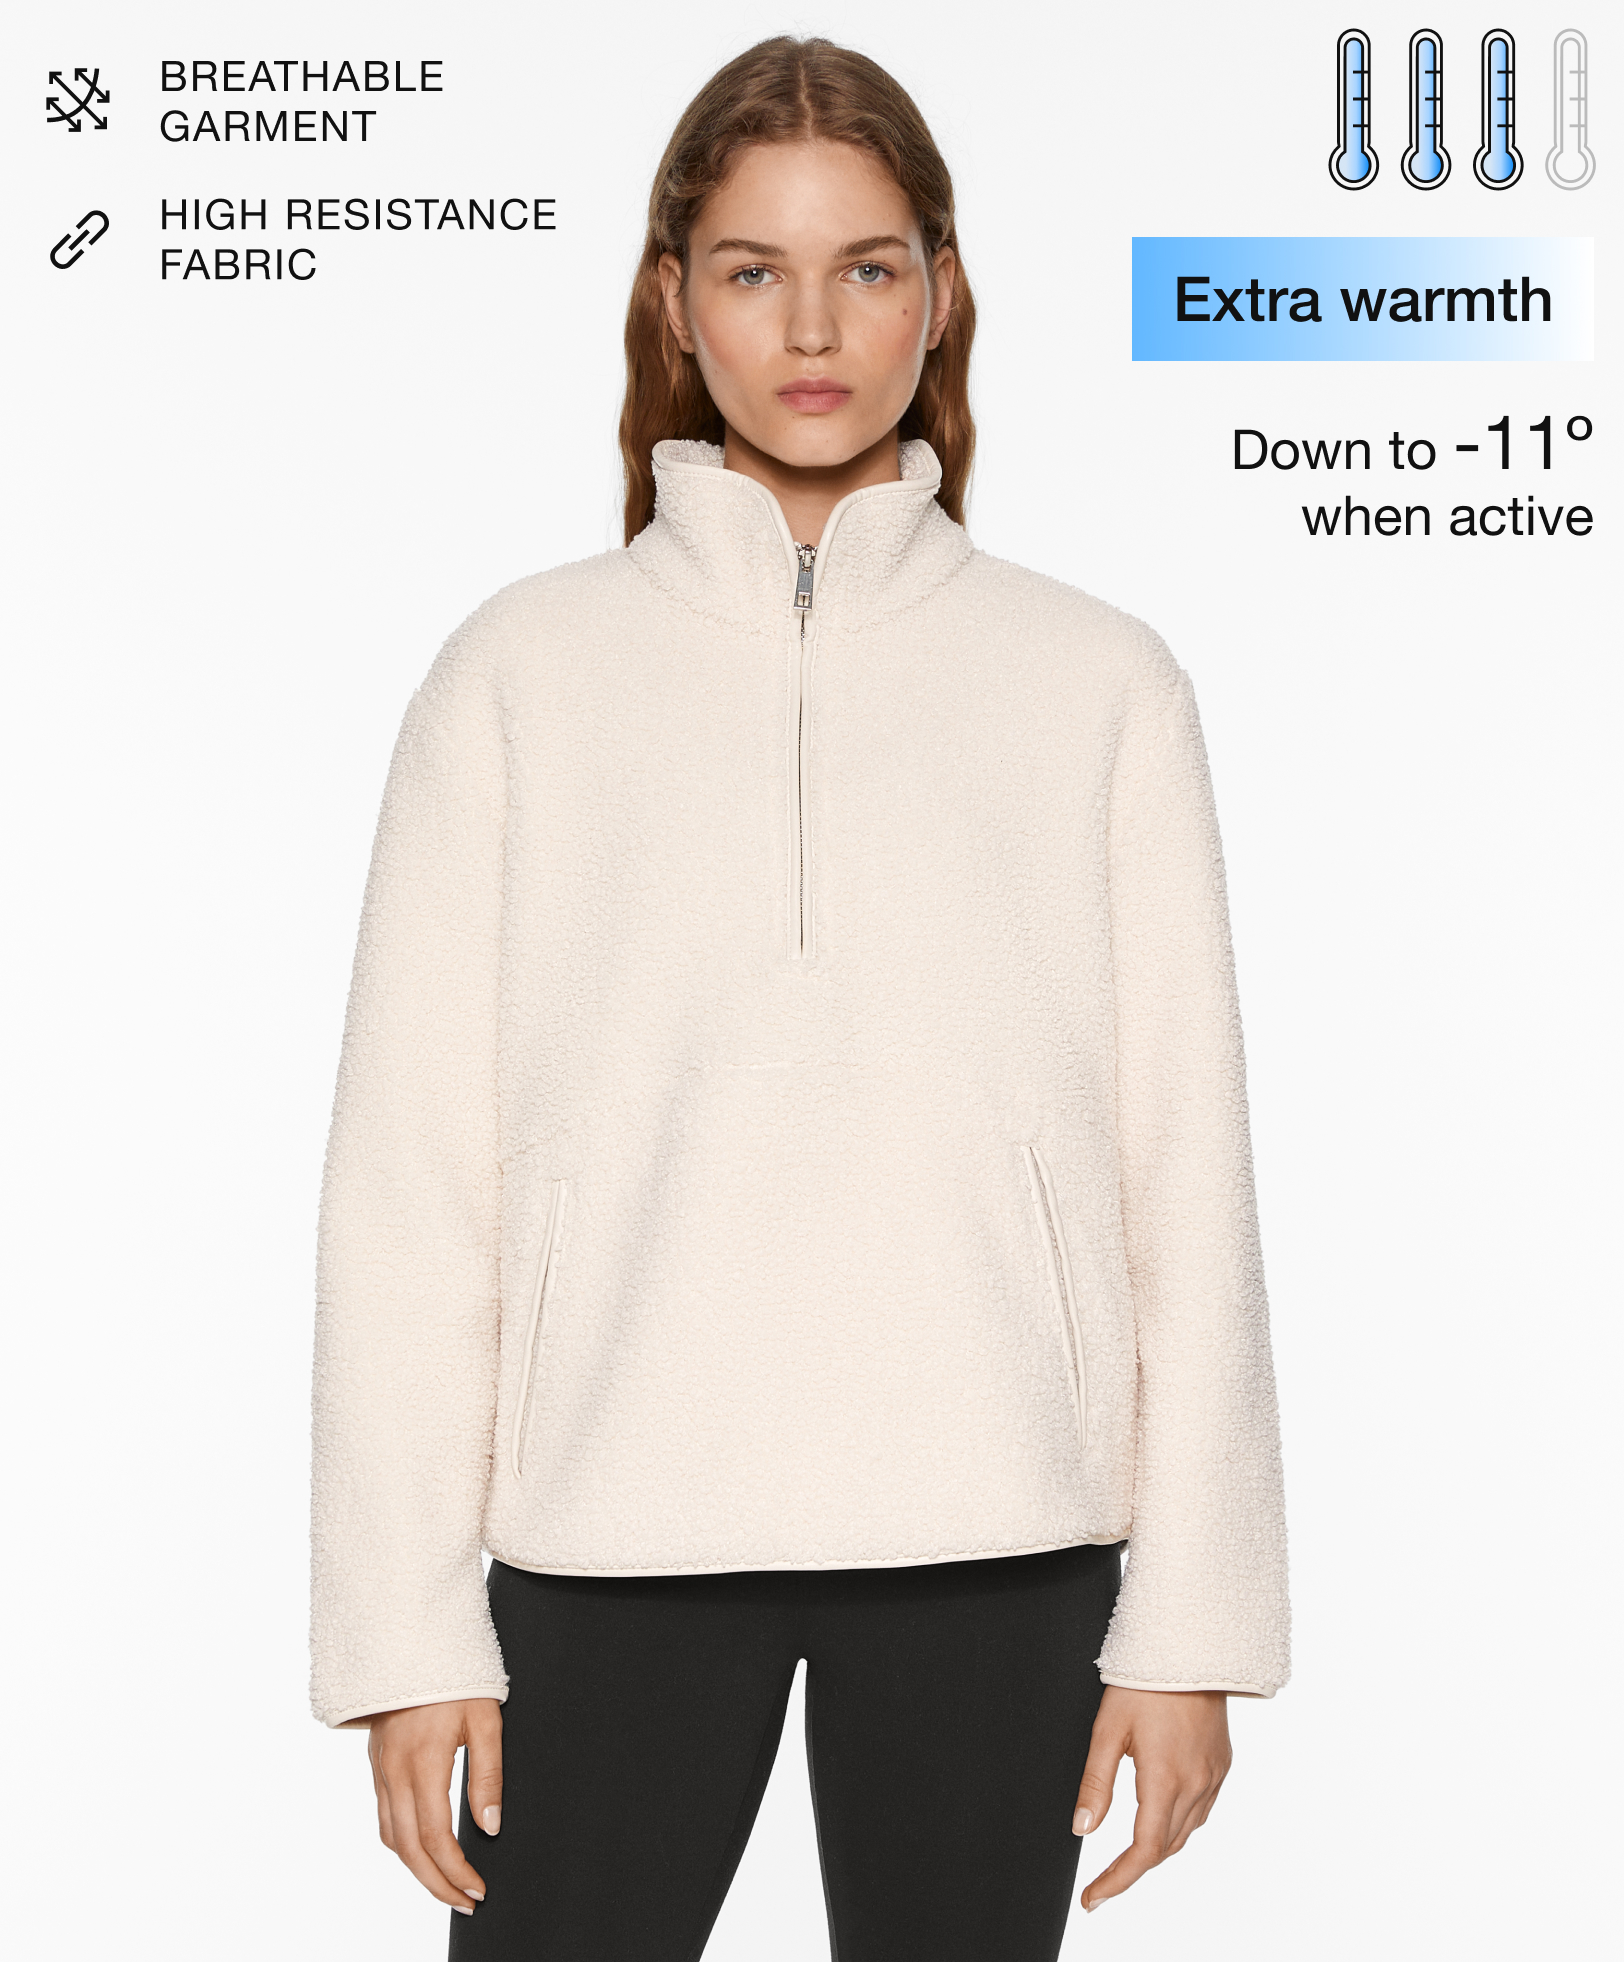 Faux-shearling sweatshirt